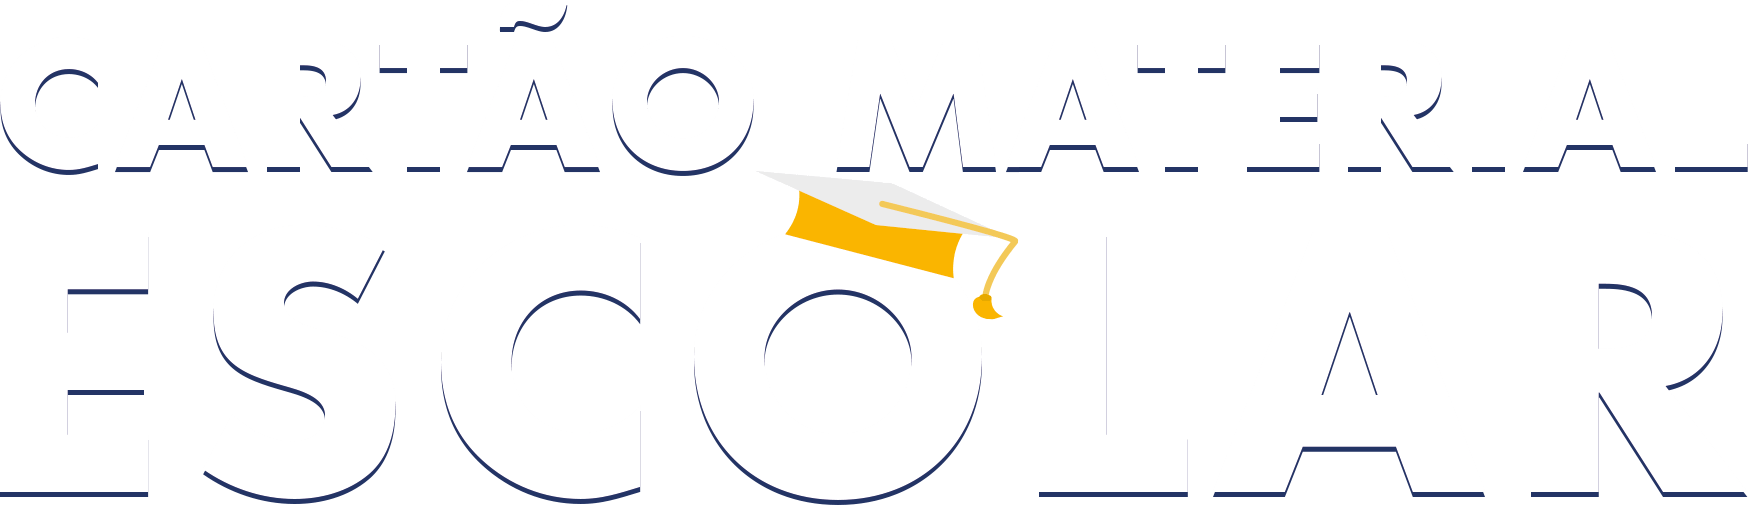 Logo do projeto Cartão Material Escolar